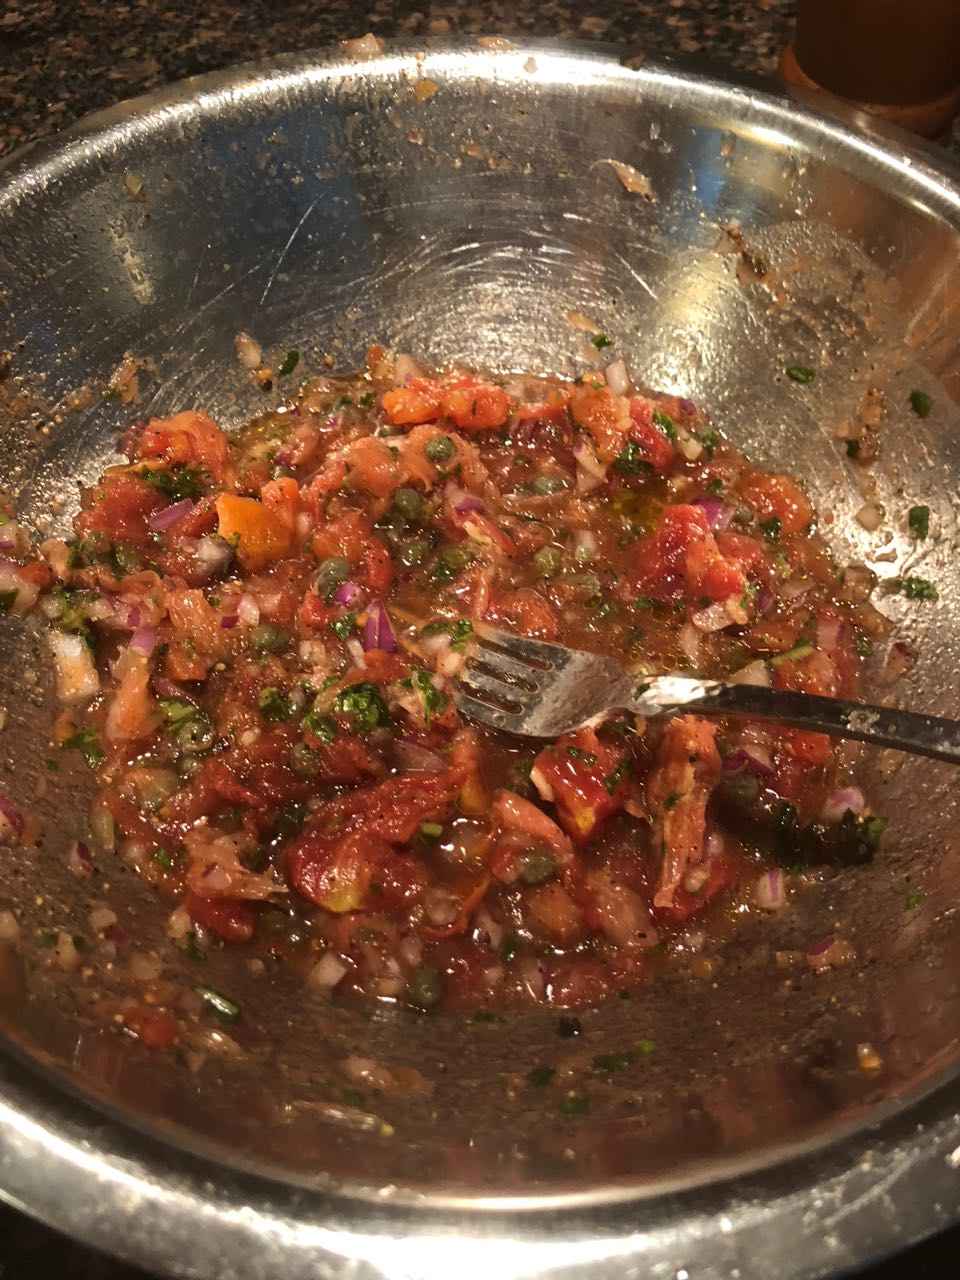 fresh salsa for the swordfish steak